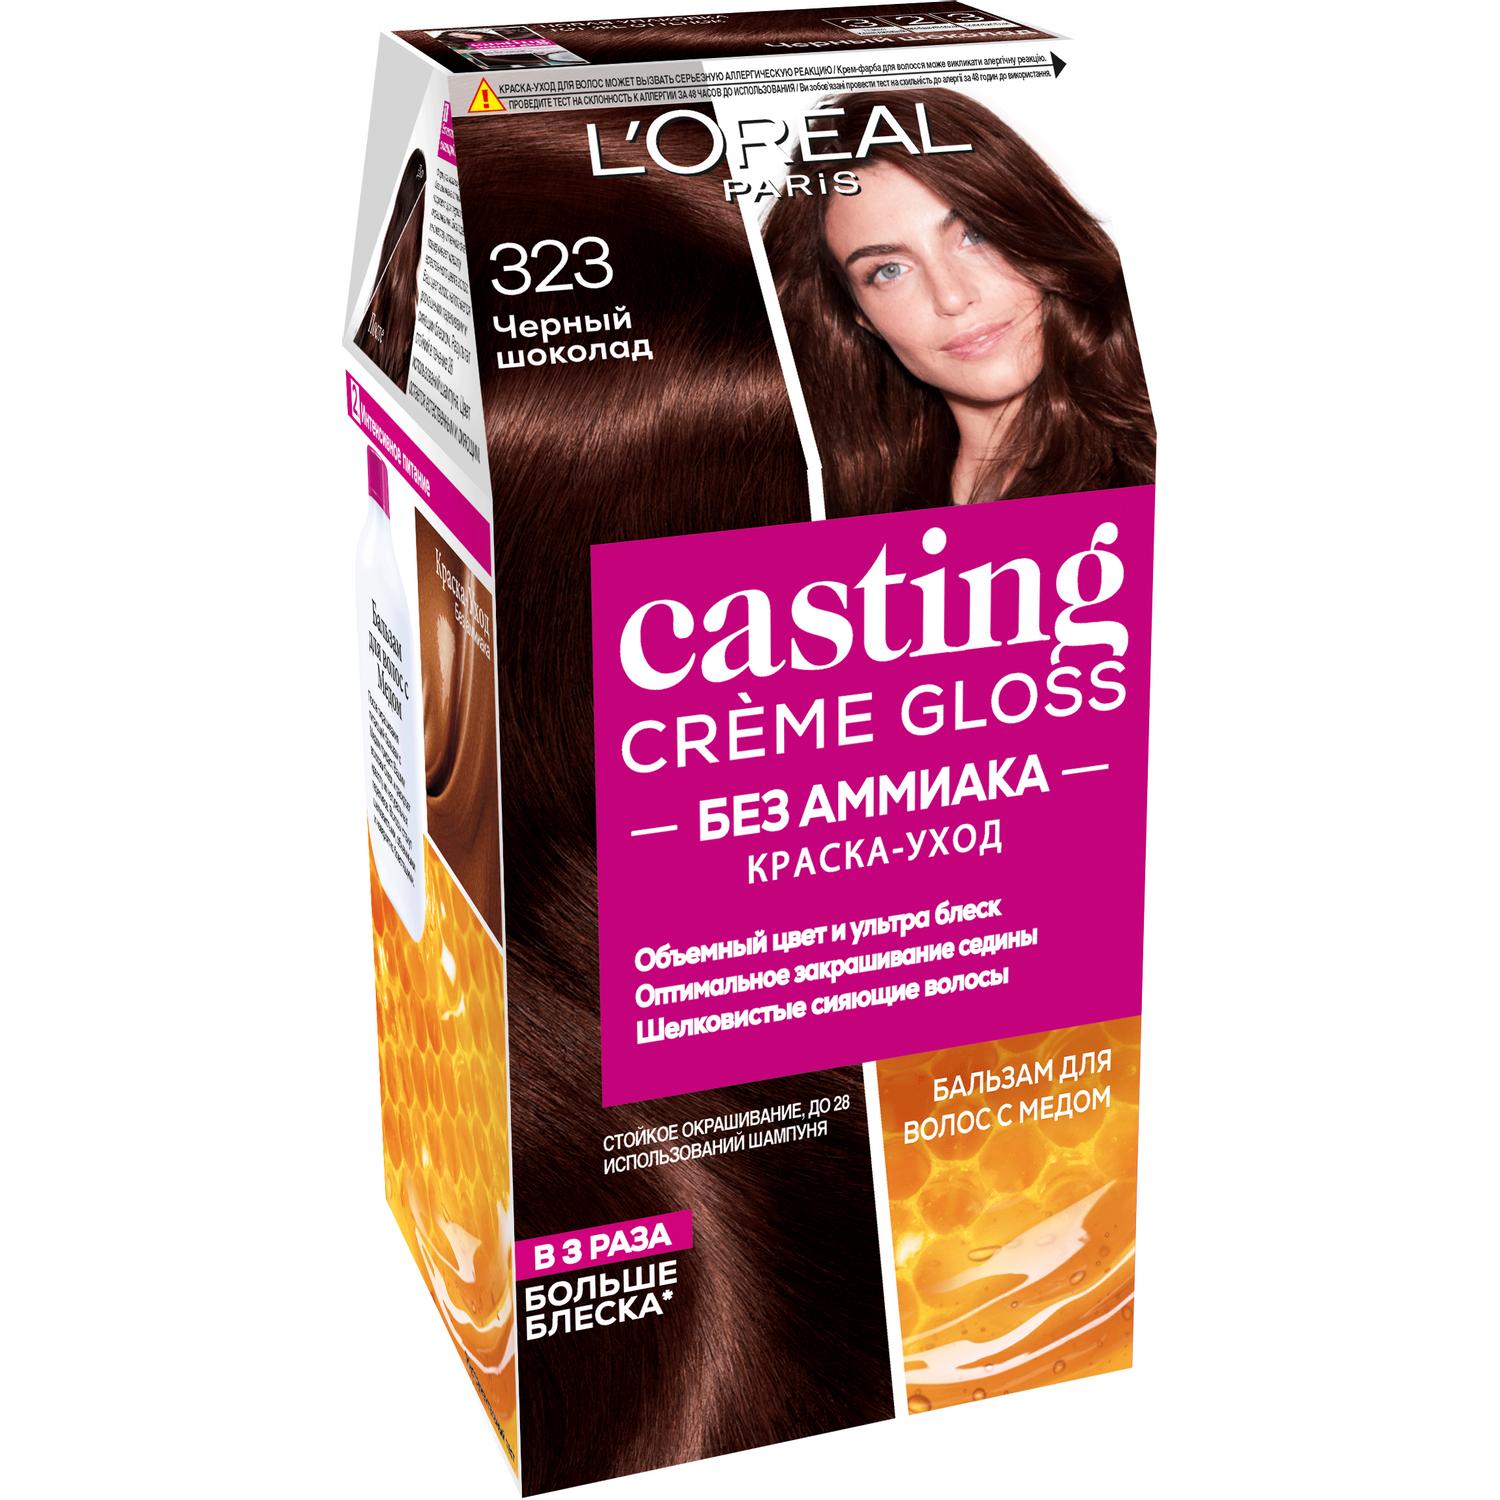 Краска L’Oreal Casting Creme Gloss 323 254 мл Черный шоколад (A3727302)